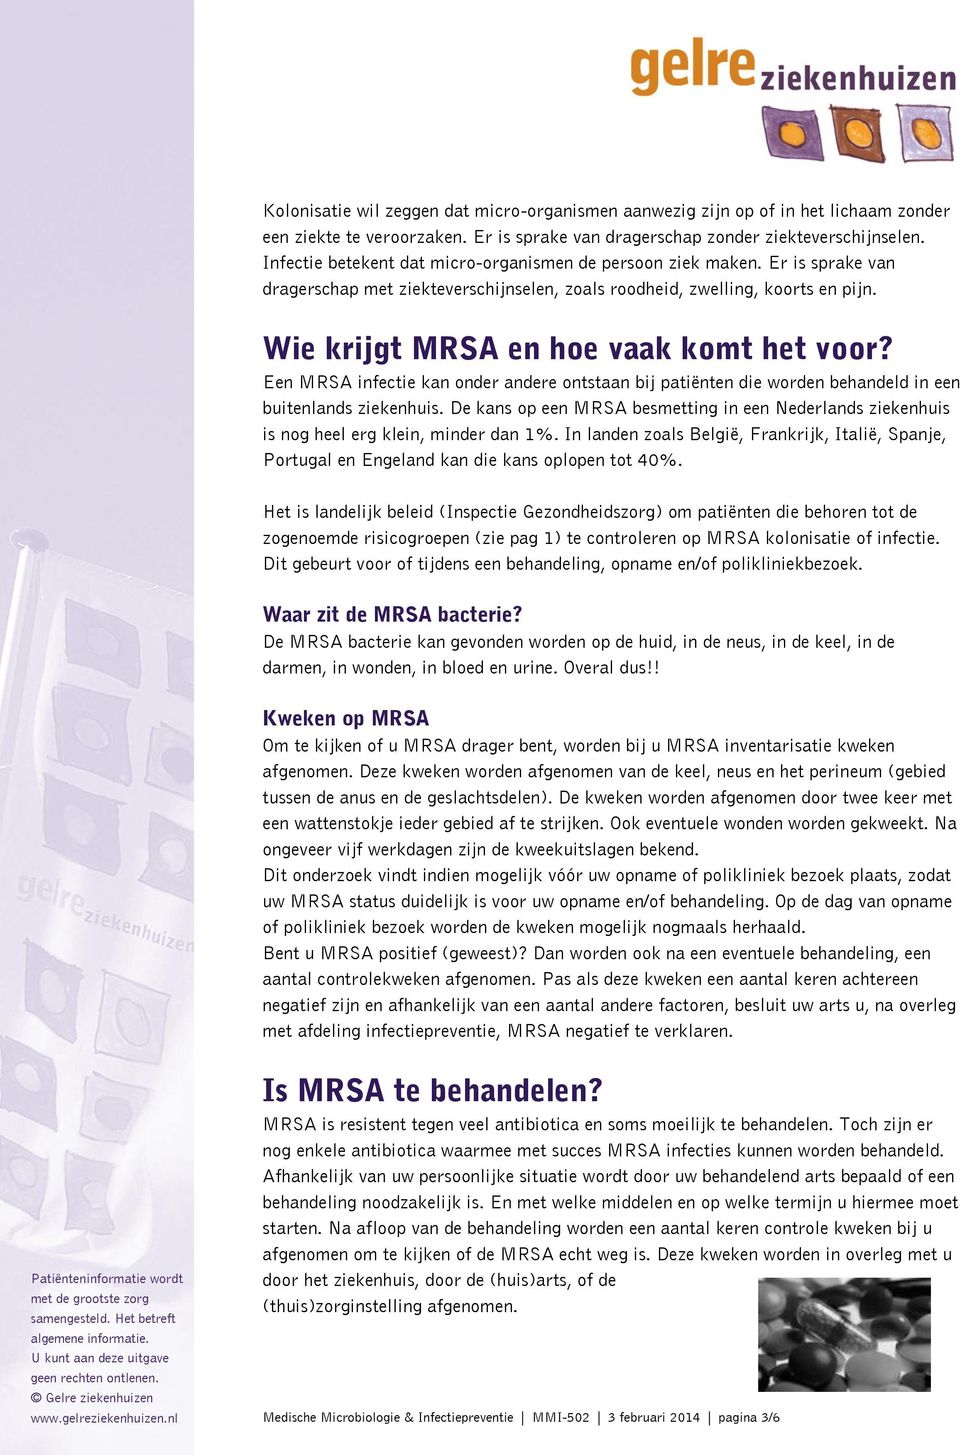 Wie krijgt MRSA en hoe vaak komt het voor? Een MRSA infectie kan onder andere ontstaan bij patiënten die worden behandeld in een buitenlands ziekenhuis.